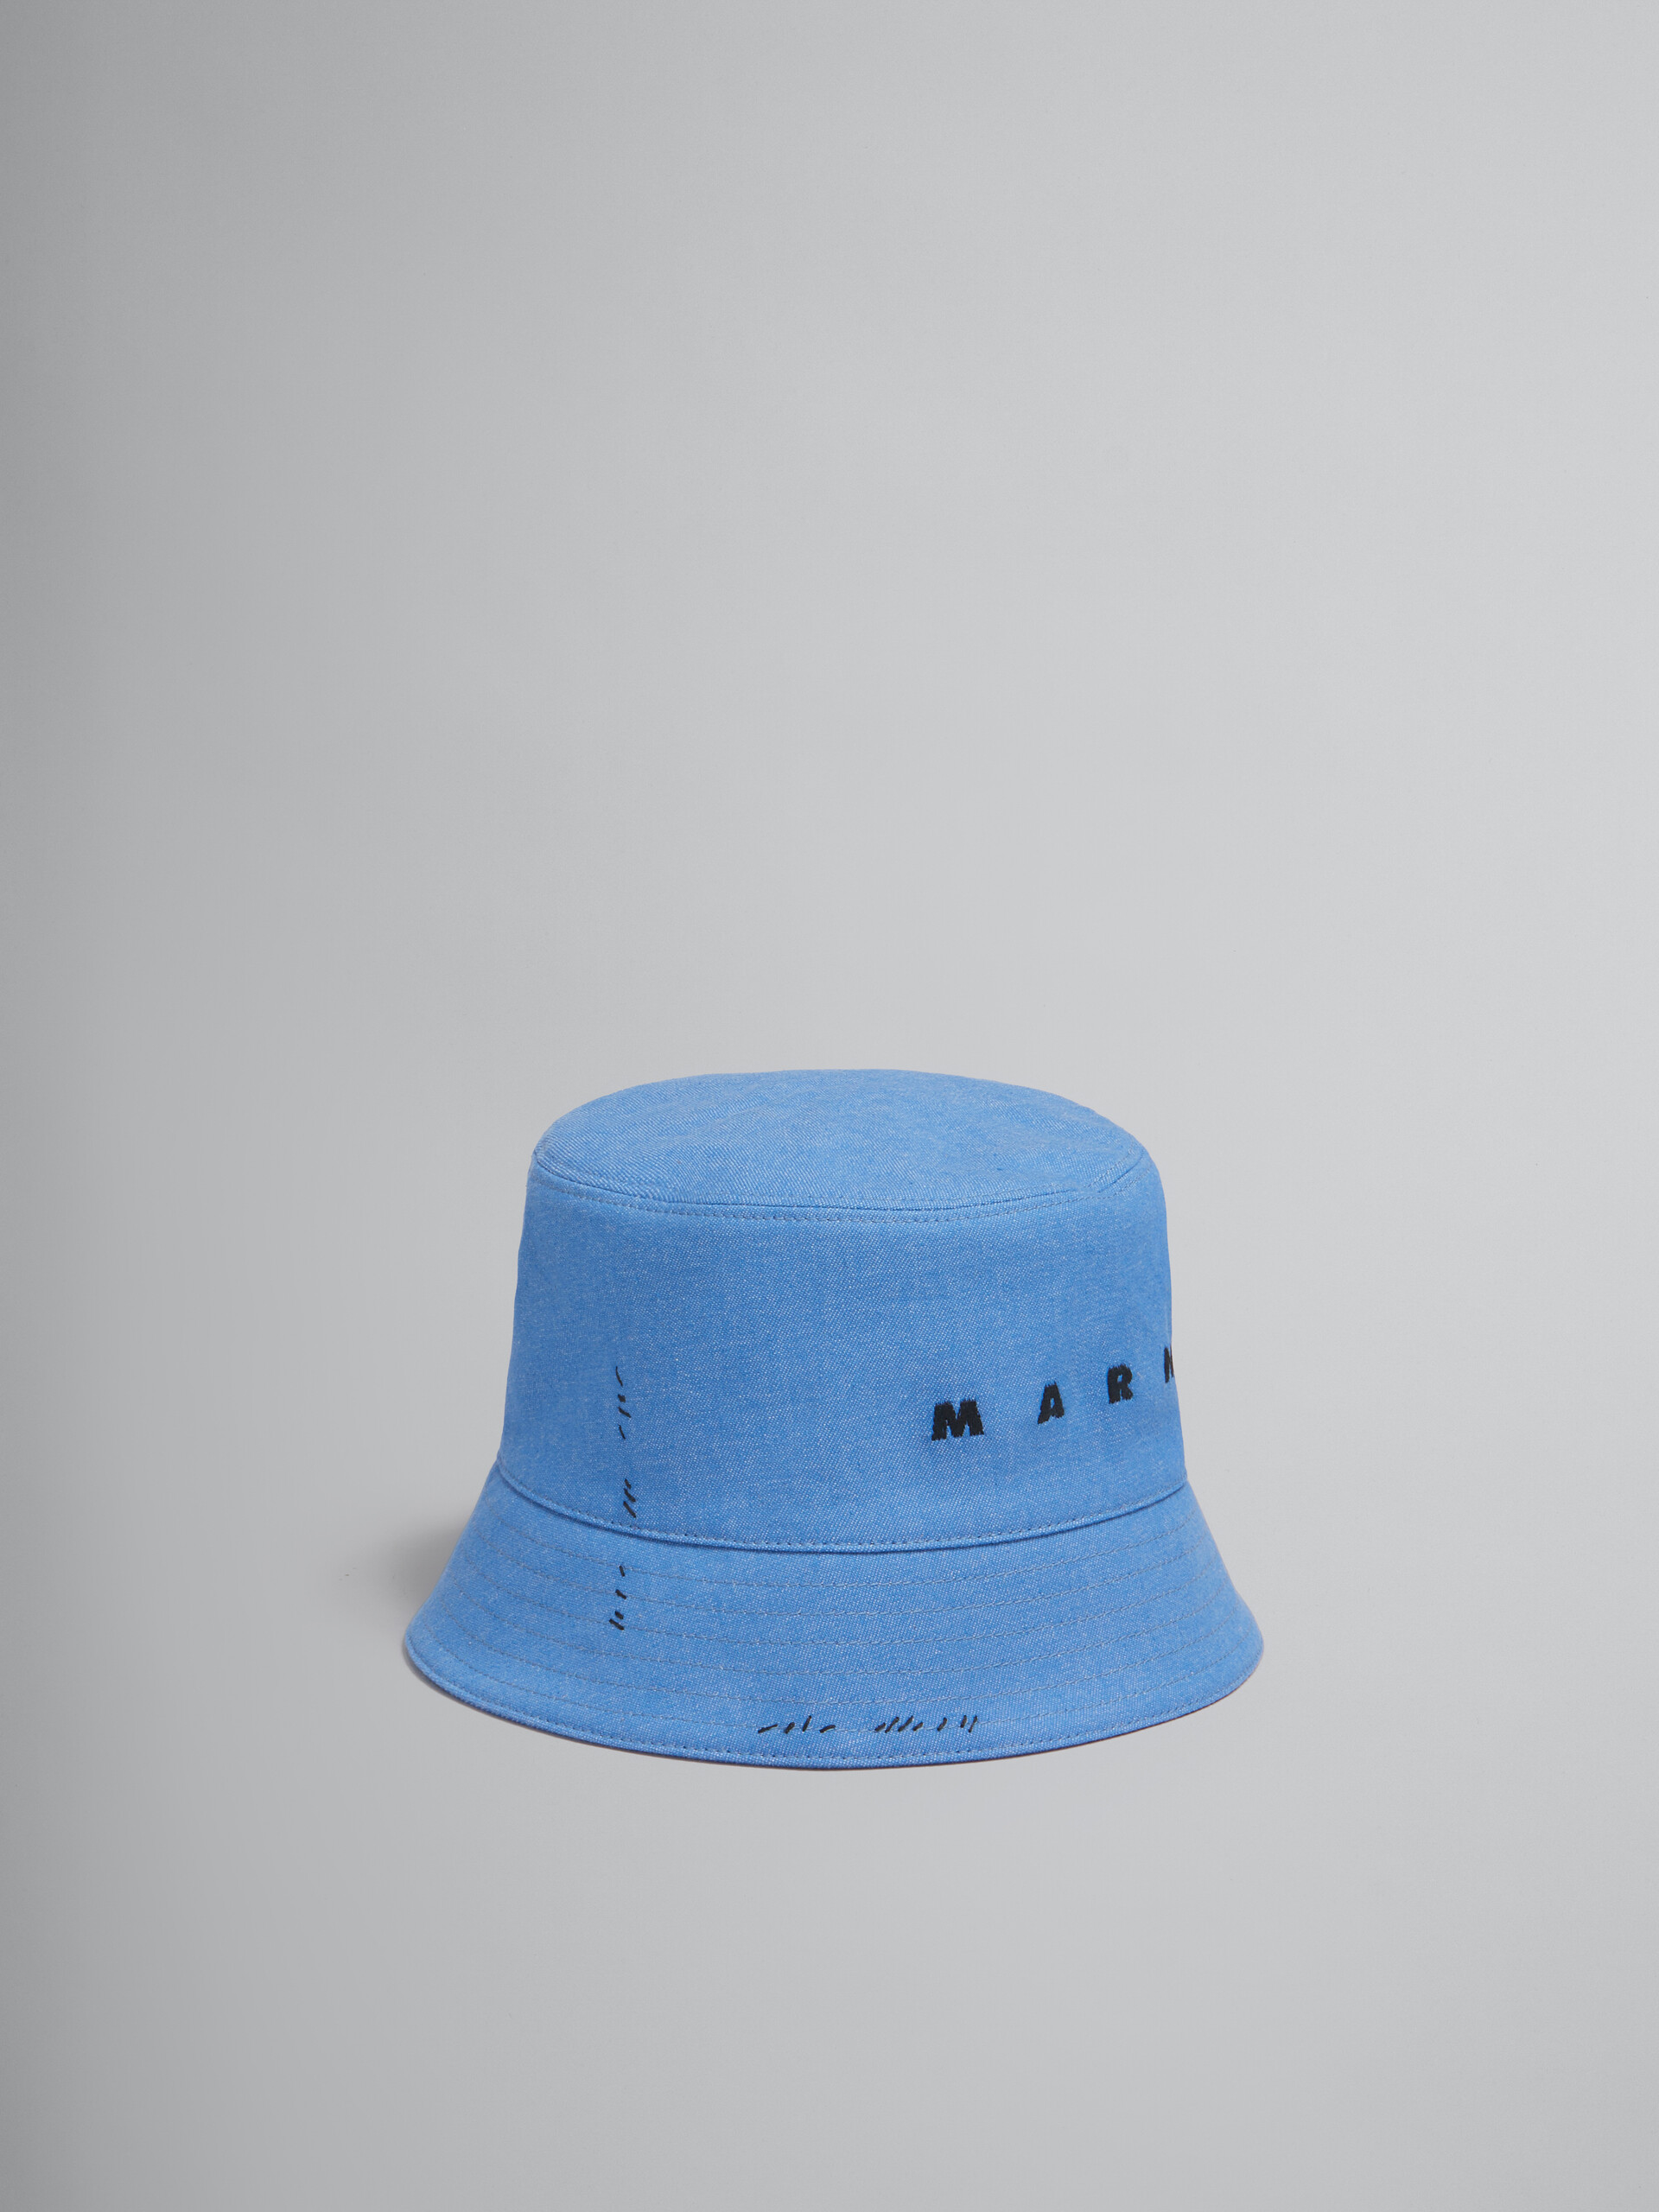 Blauer Fischerhut aus Denim mit Marni-Flicken - Hüte - Image 1